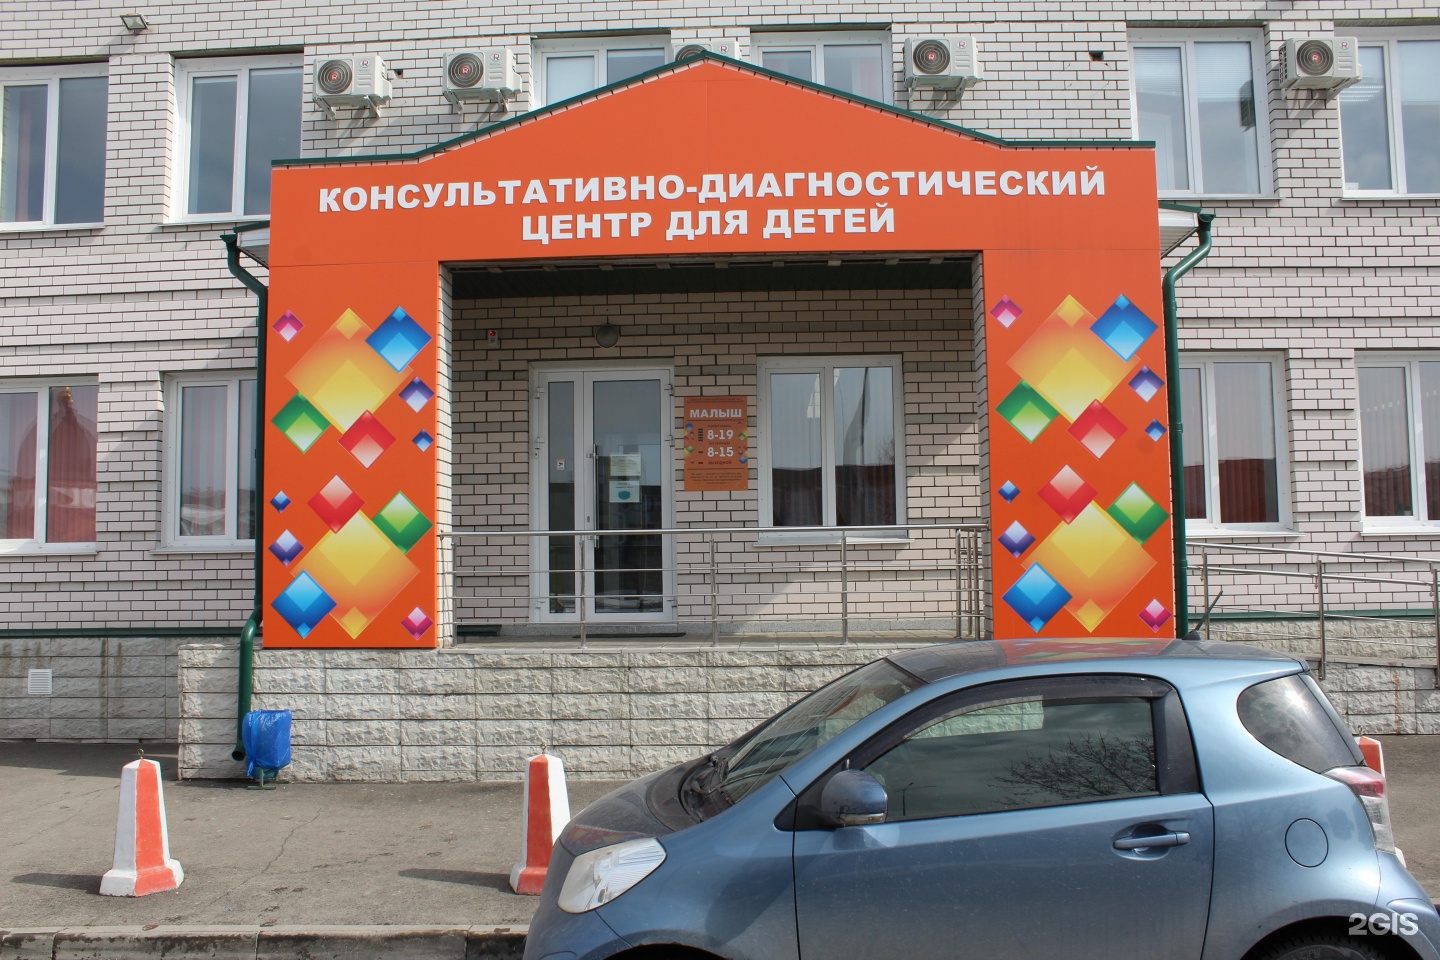 Кдц для детей. Центр малыш на Балтийской в Барнауле. Консультативно-диагностический центр для детей. Детский диагностический центр. Детский диагностический центр Краснодар.